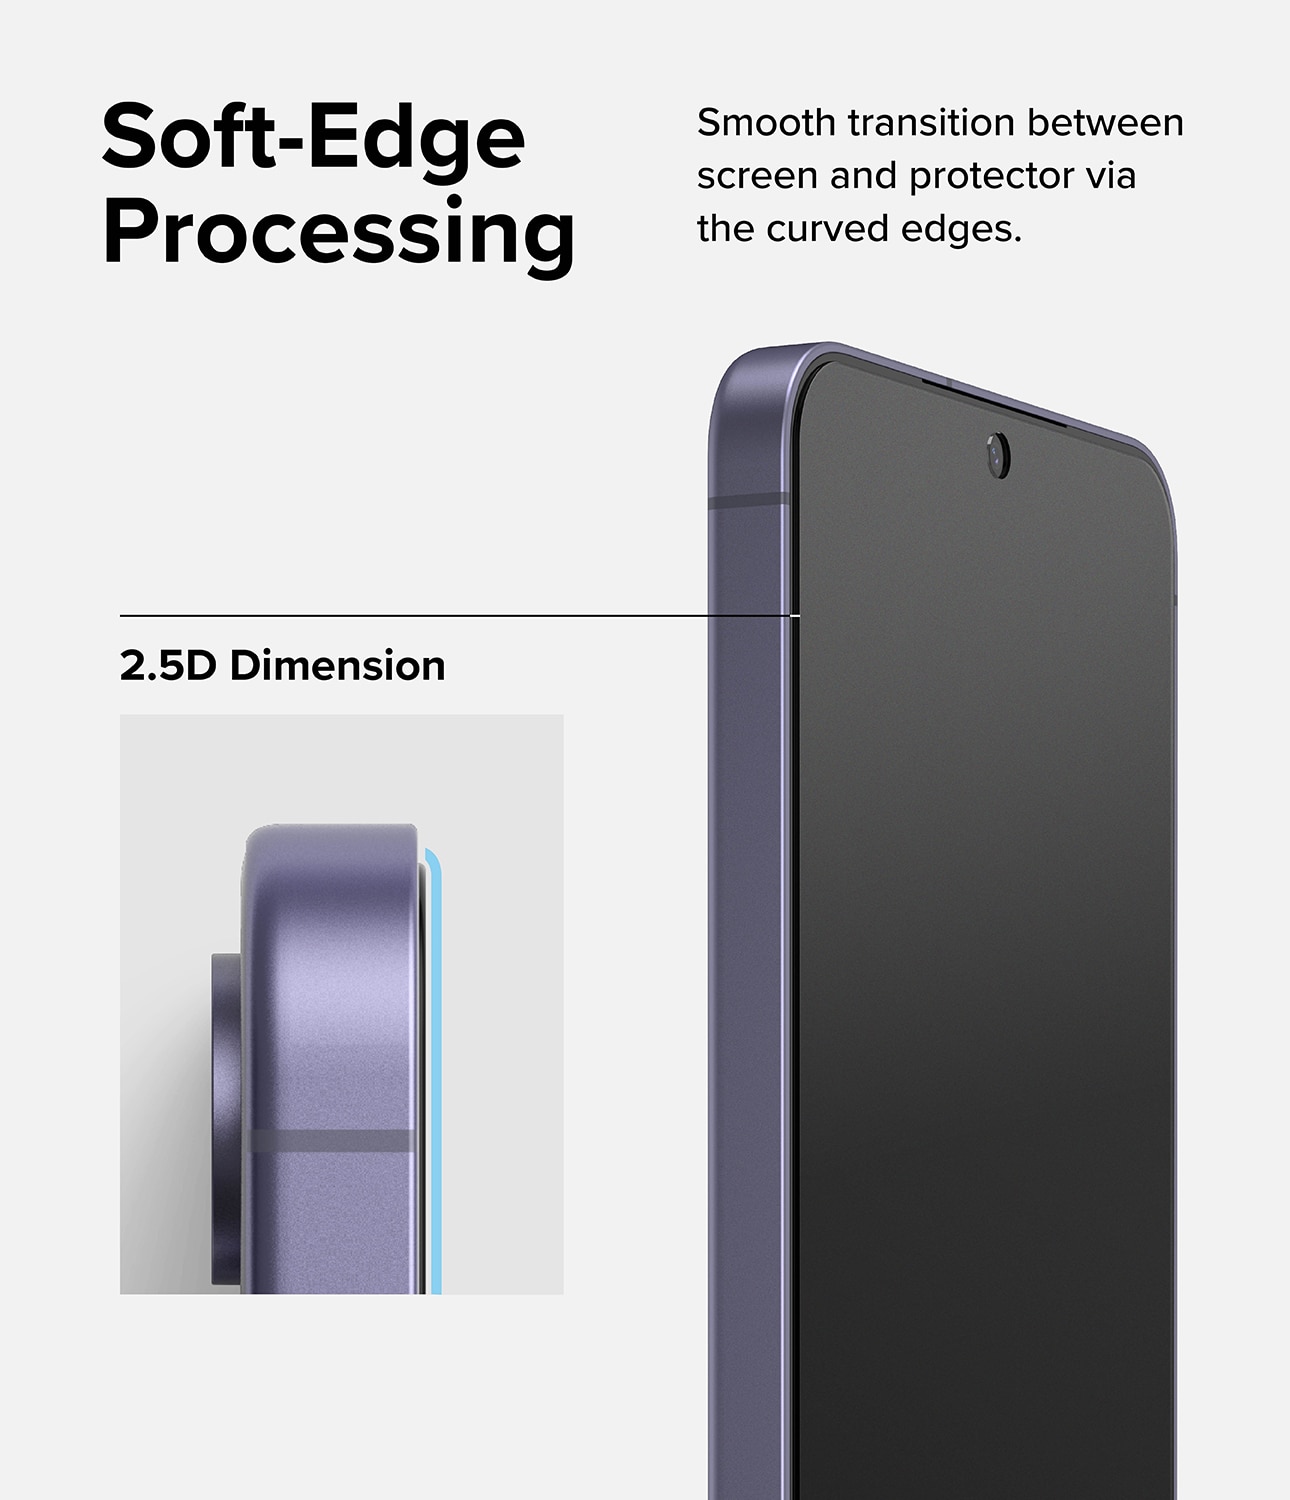 Easy Slide Privacy Glass (2 Stück) Samsung Galaxy S24